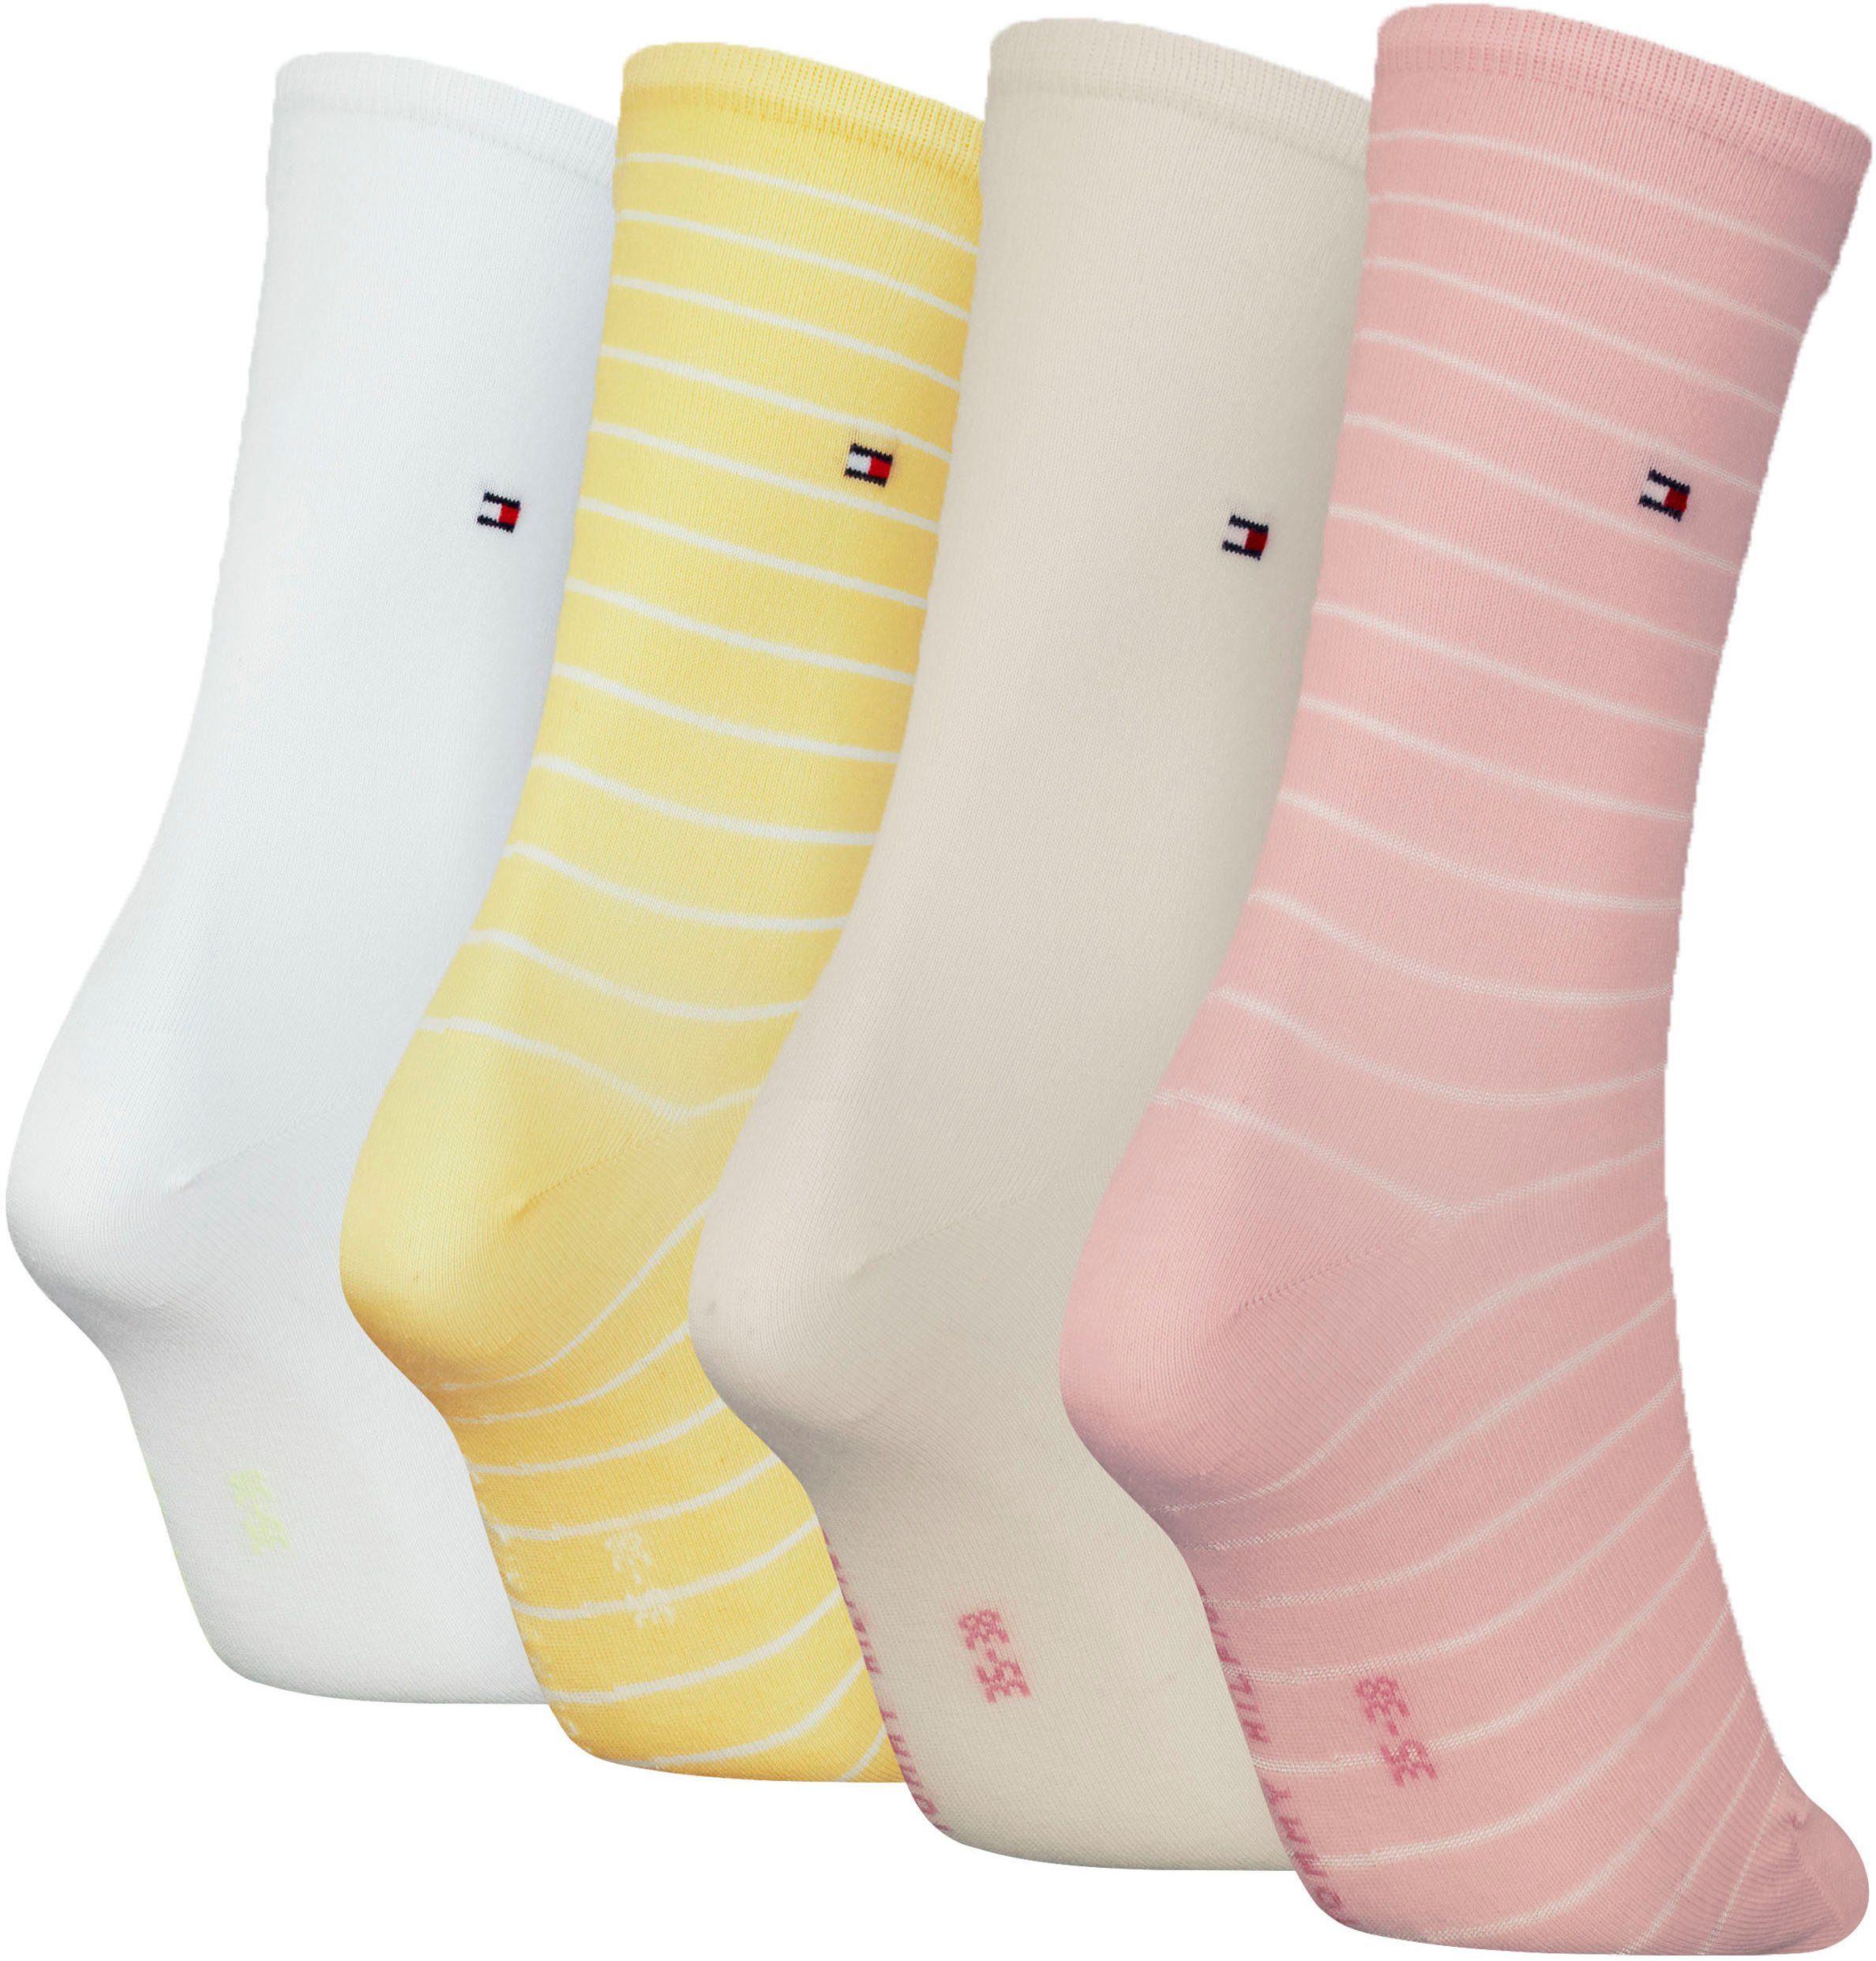 Tommy raffiniertes Streifendesign Socken Hilfiger klassisches pink-yellow-white